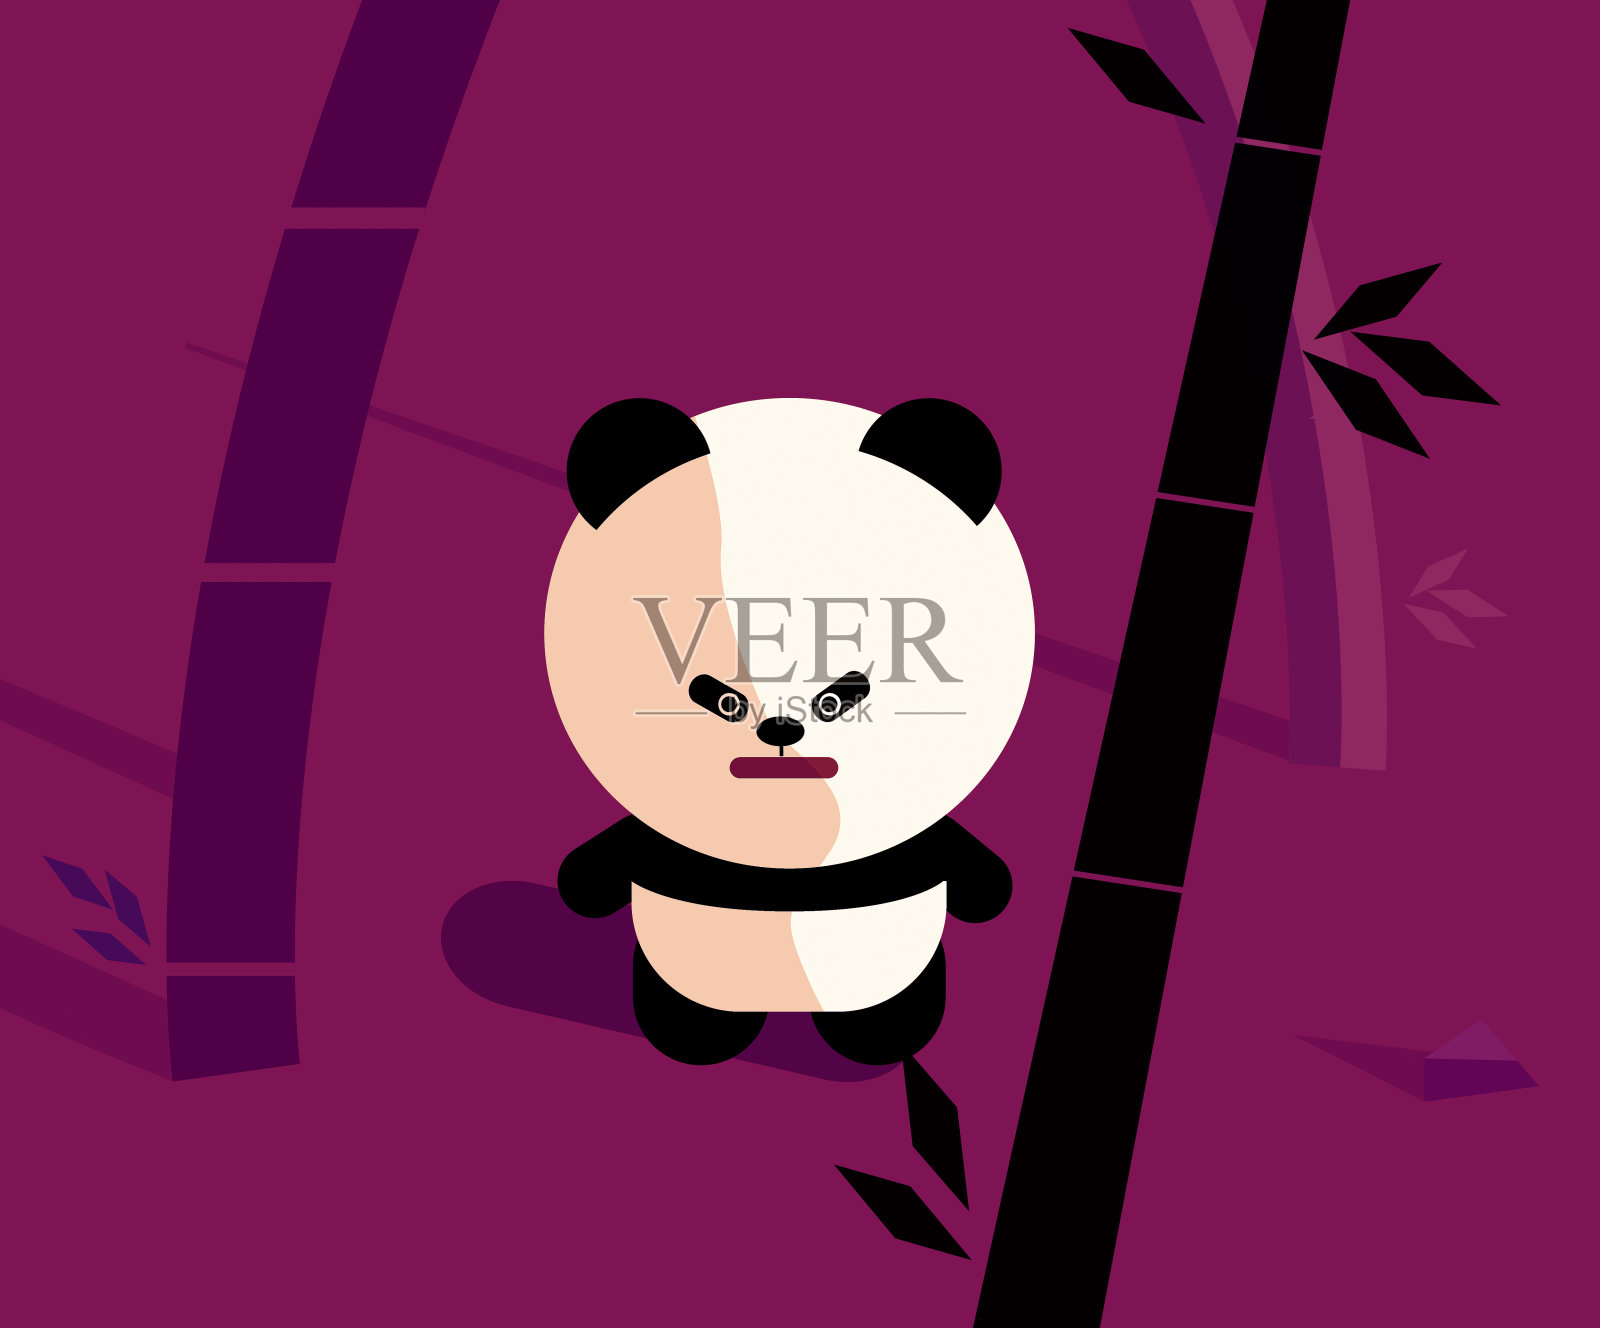 可爱的卡通熊猫在竹林插图。以竹子为背景设计熊猫形象。熊猫站在丛林里。插画图片素材